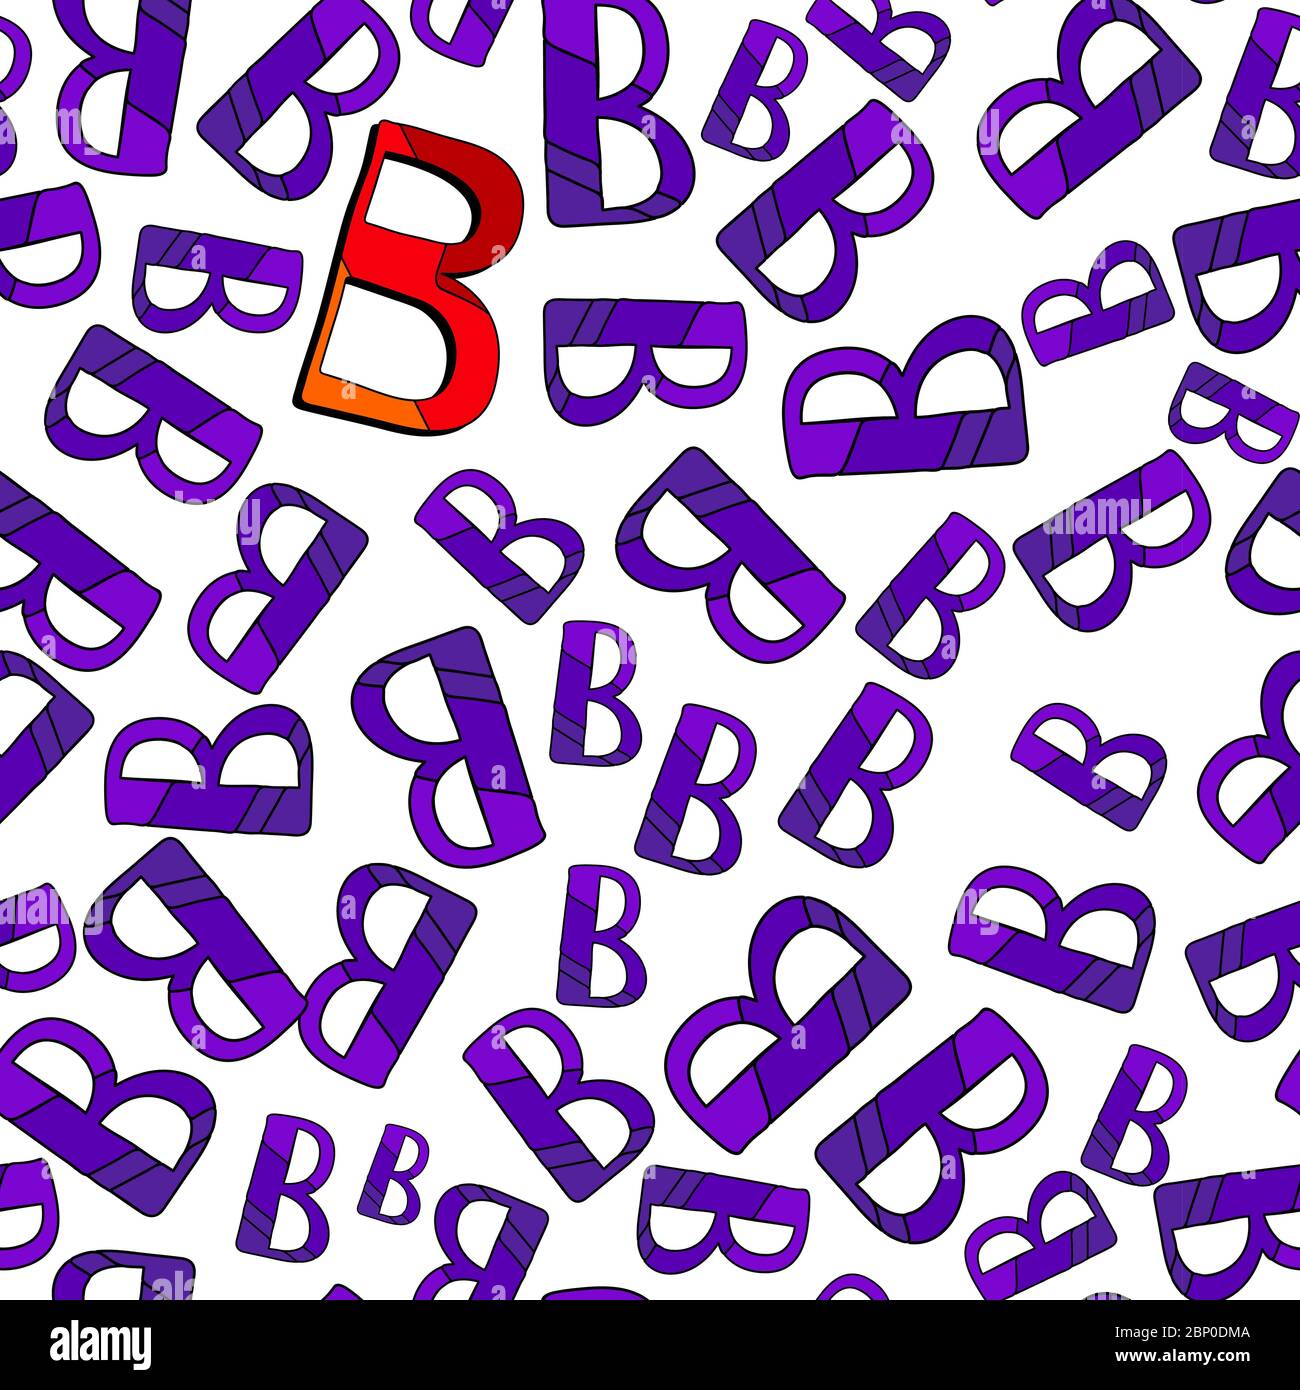 Lettere B - motivo senza giunture. A caso B lettere di sfumature violacee e una rosso-arancione. Per studiare le lettere. Illustrazione Vettoriale